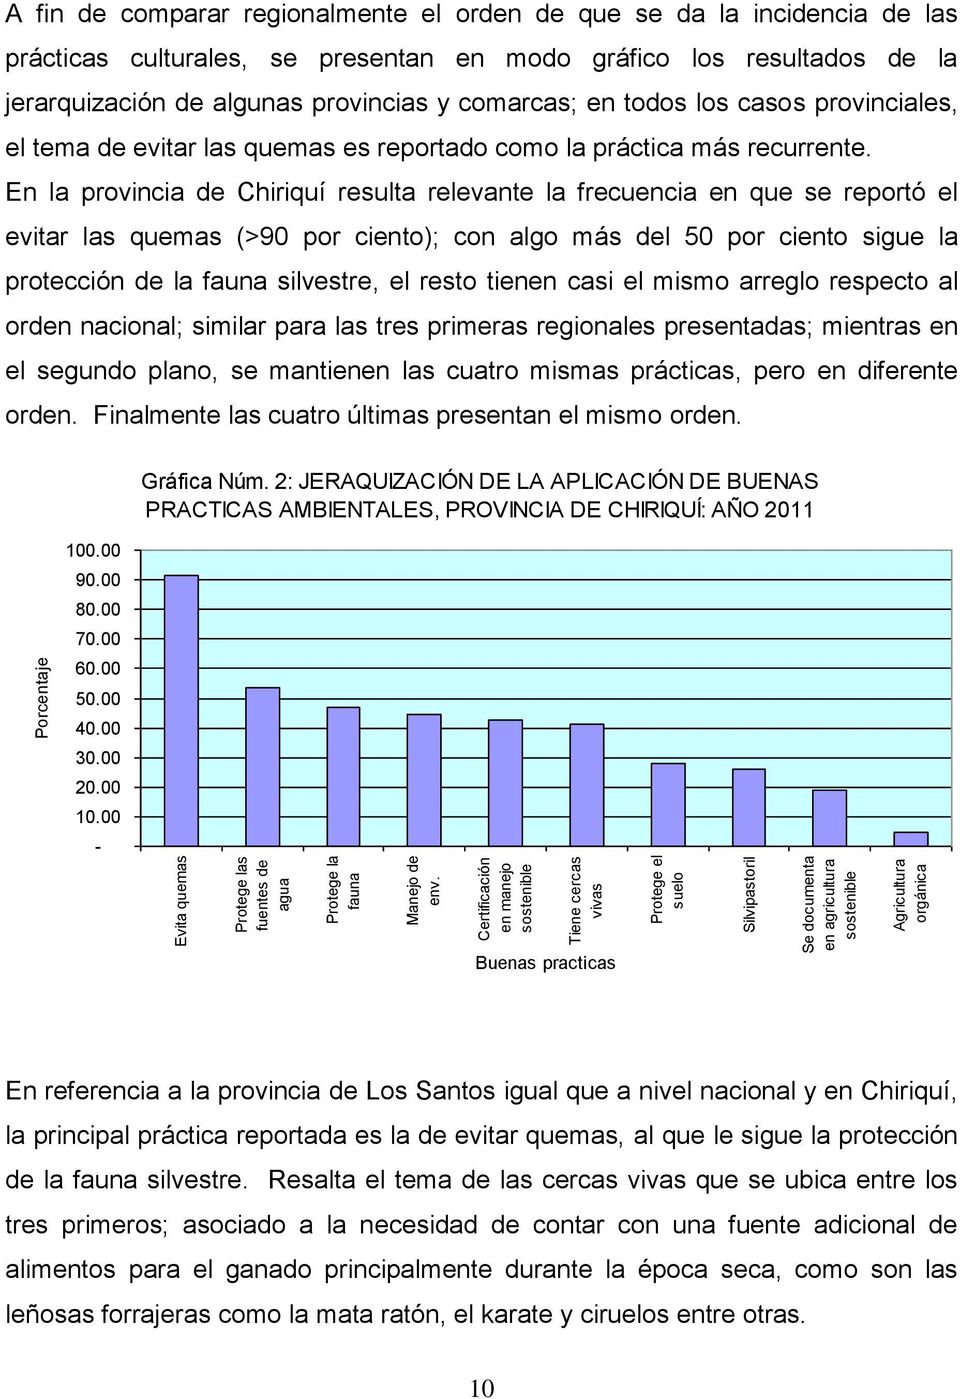 En la provincia de Chiriquí resulta relevante la frecuencia en que se reportó el evitar las quemas (>90 por ciento); con algo más del 50 por ciento sigue la protección de la fauna silvestre, el resto